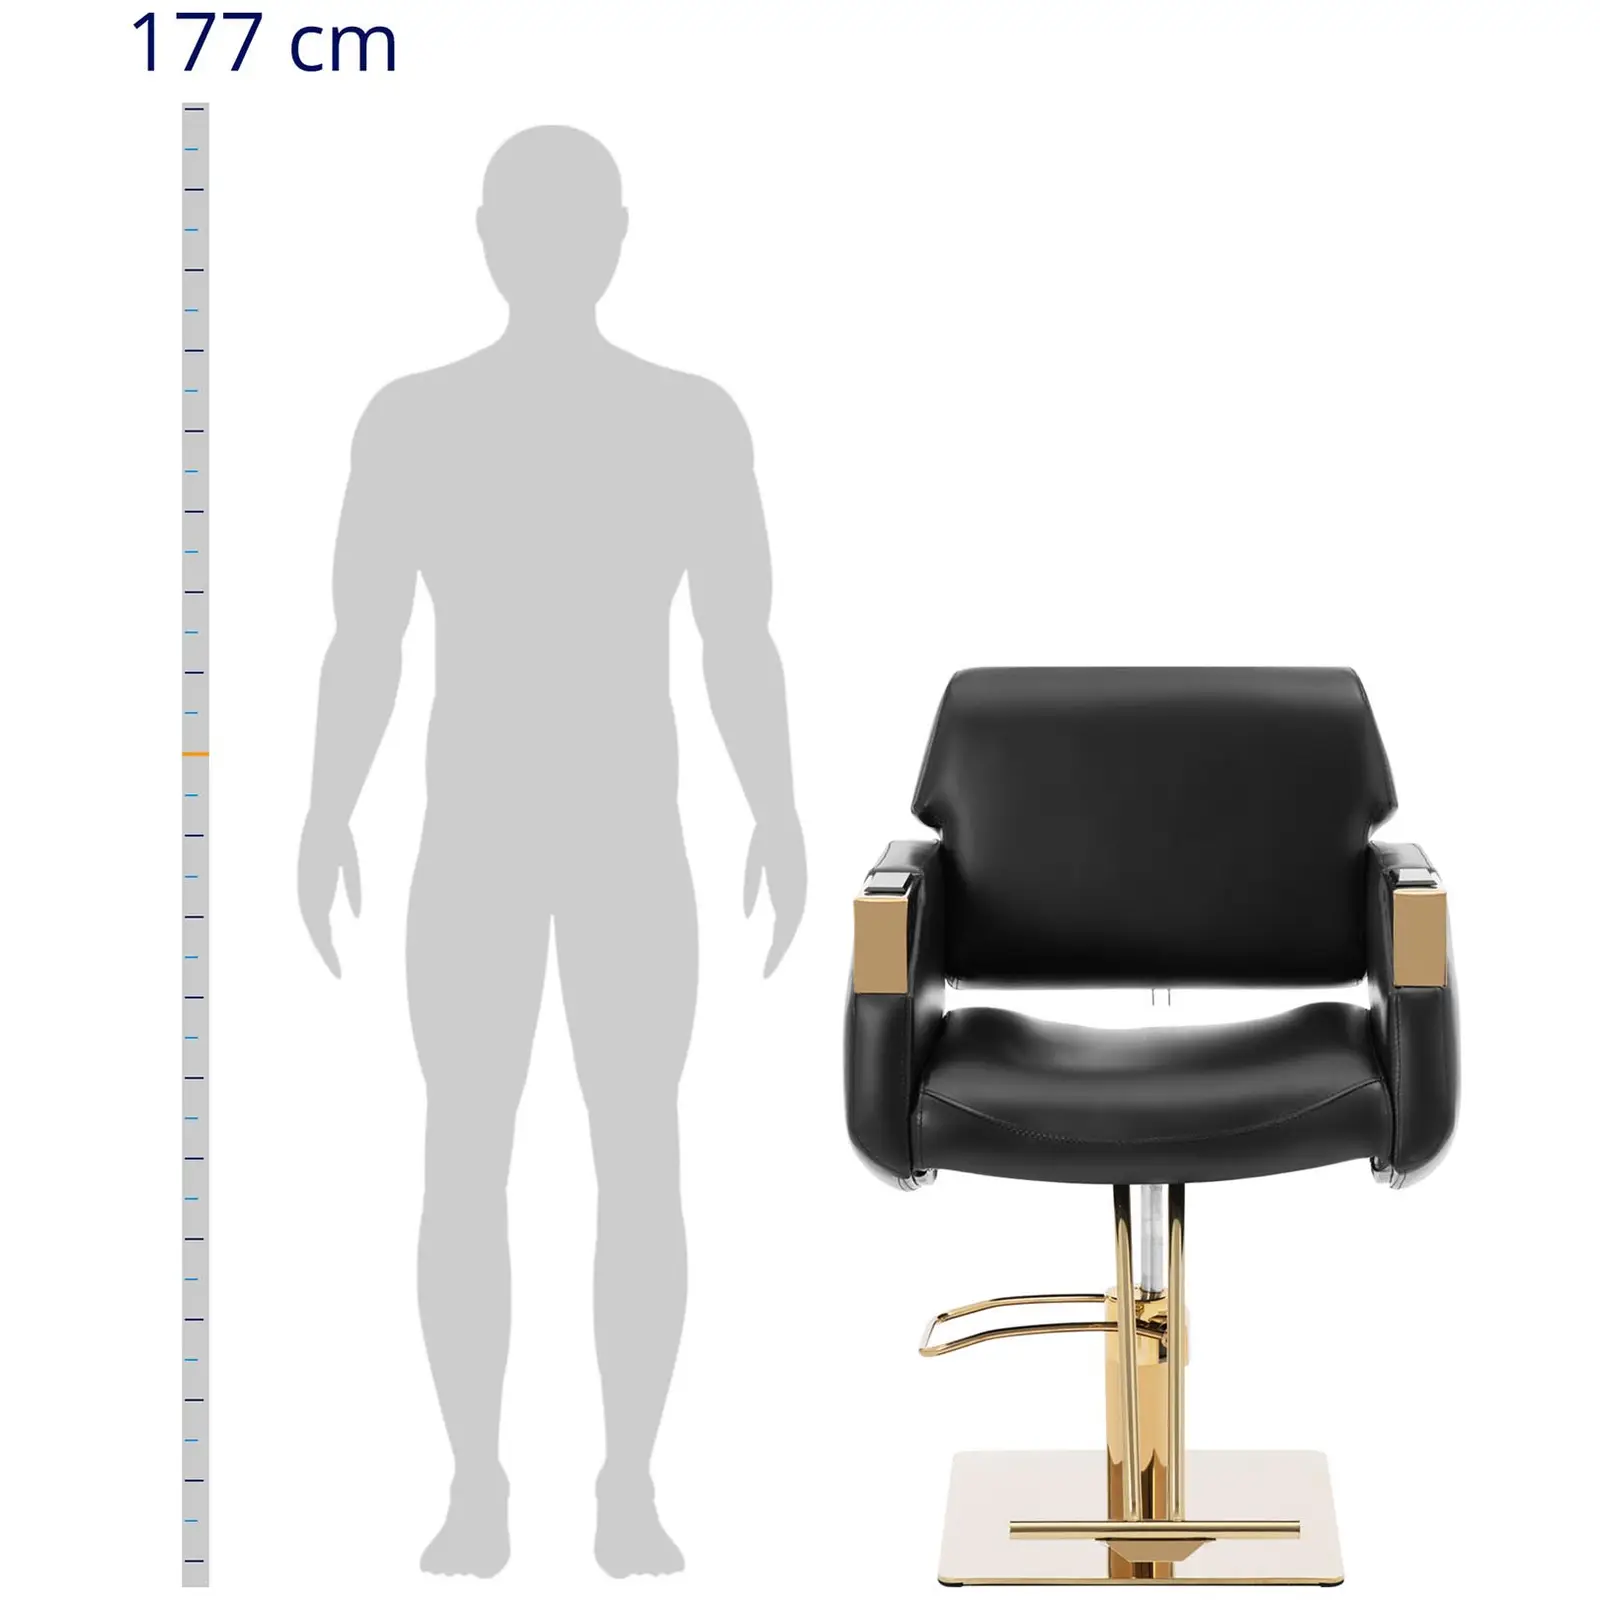 Salono kėdė su atramomis kojoms - 880 - 1030 mm - 200 kg - juoda / auksinė